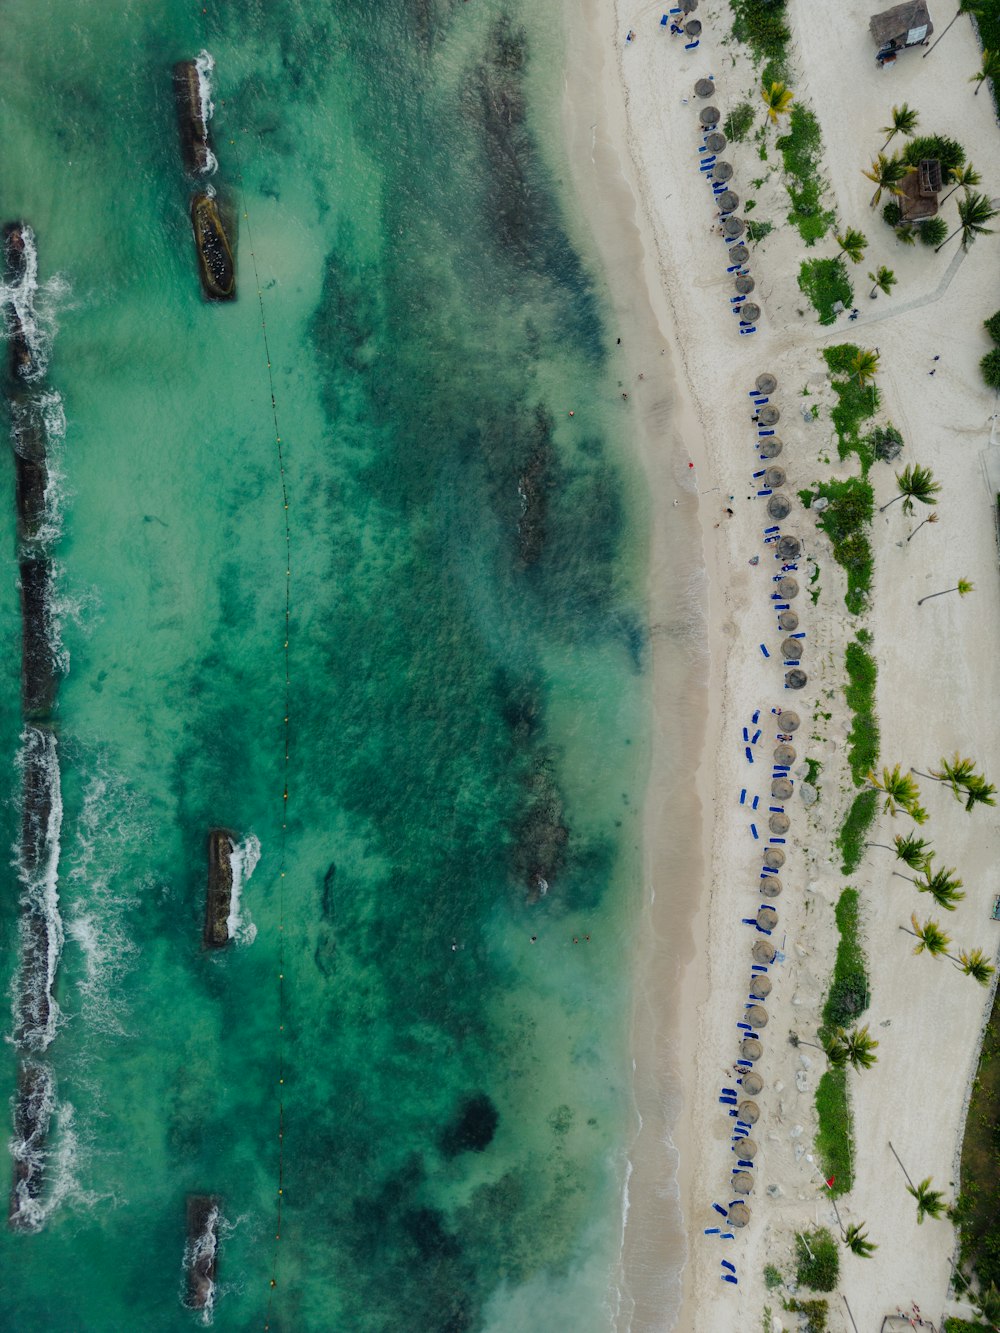 Una vista aérea de una playa con barcos en el agua